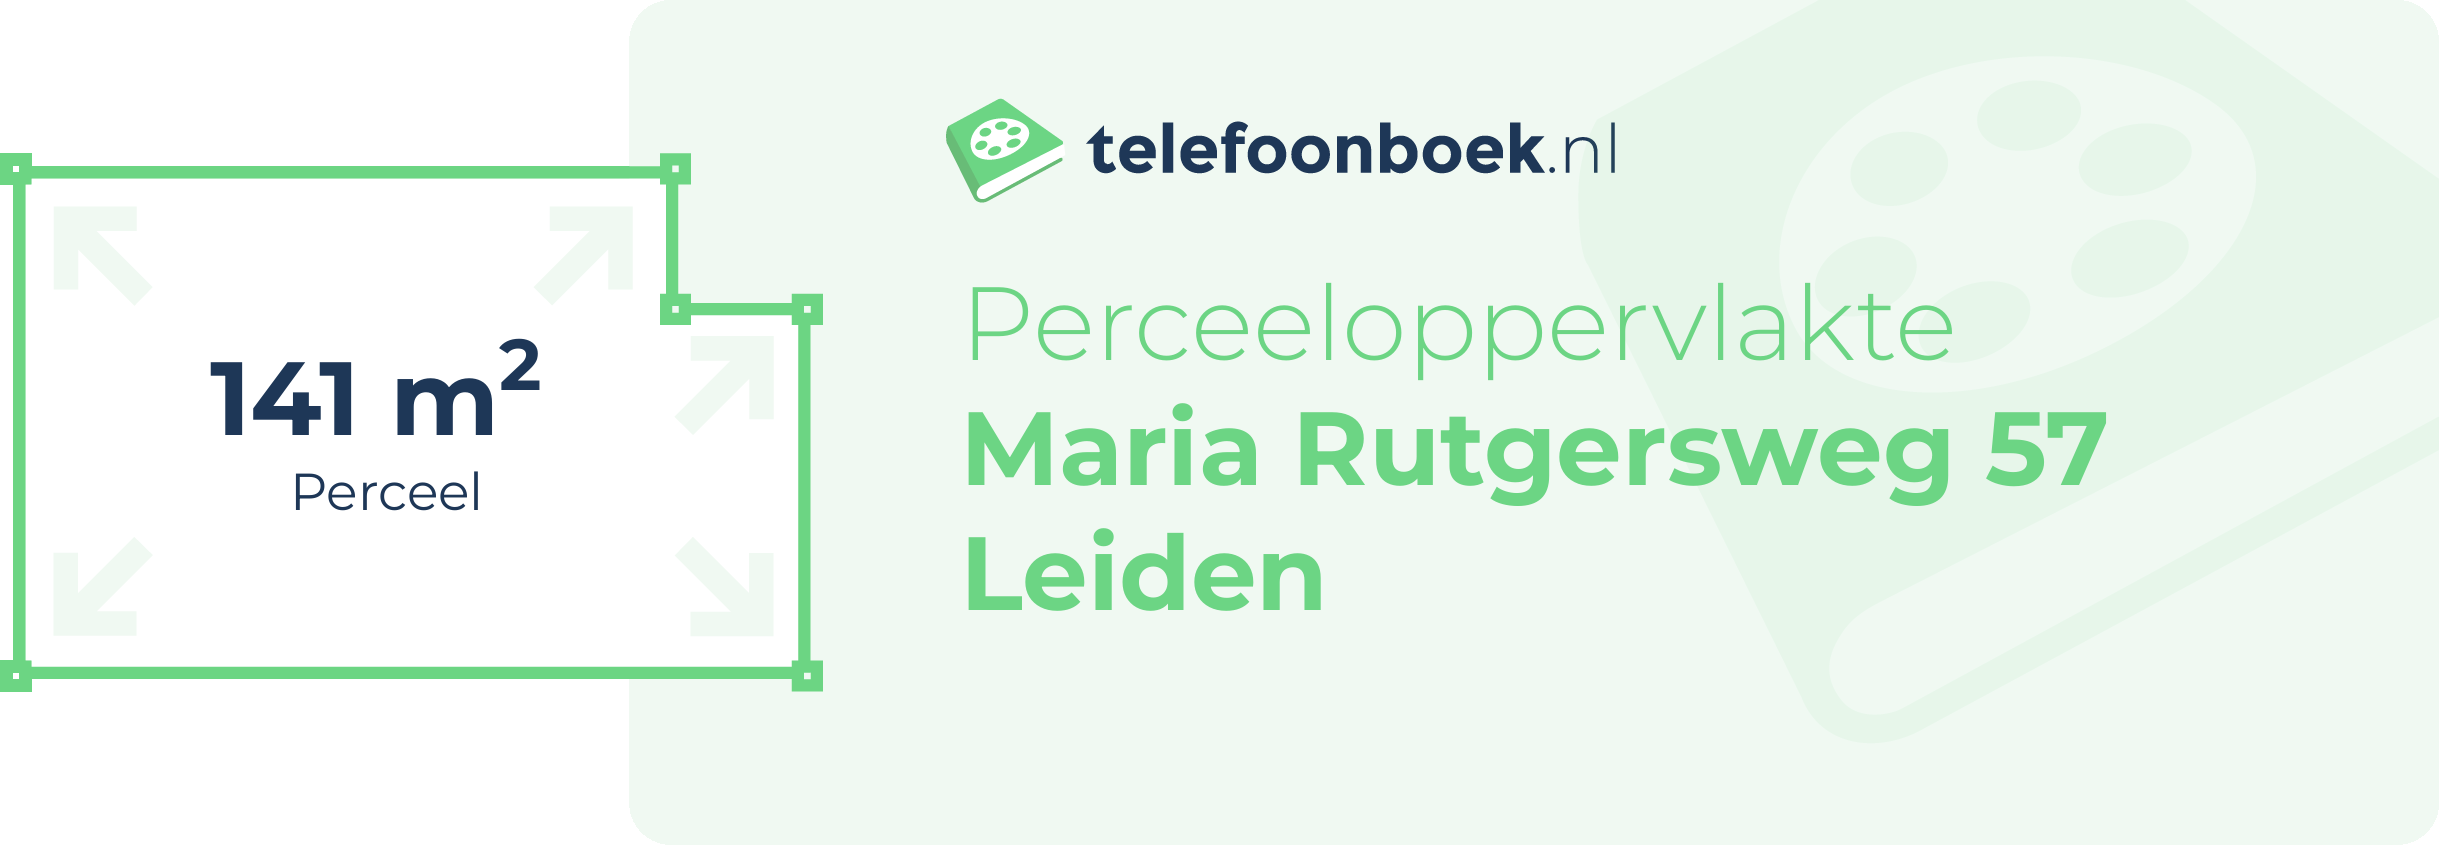 Perceeloppervlakte Maria Rutgersweg 57 Leiden